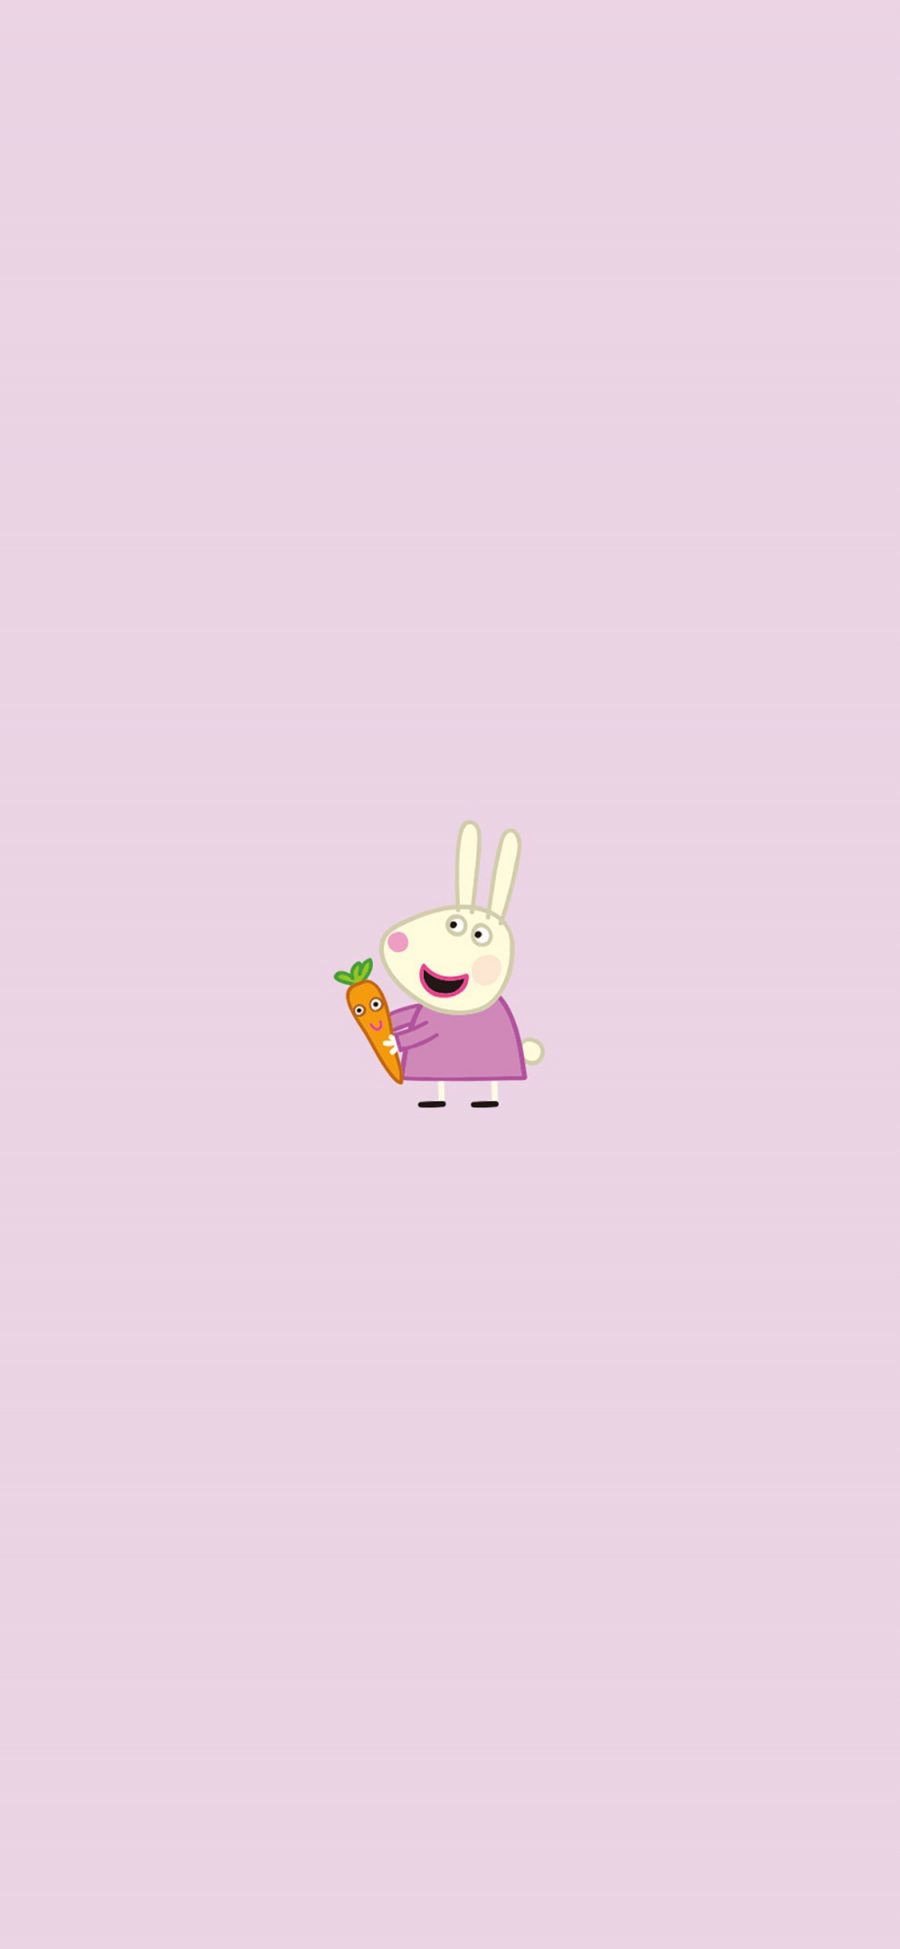 [2436×1125]小兔瑞贝卡 动画 粉色 小猪佩奇 可爱 胡萝卜 苹果手机动漫壁纸图片